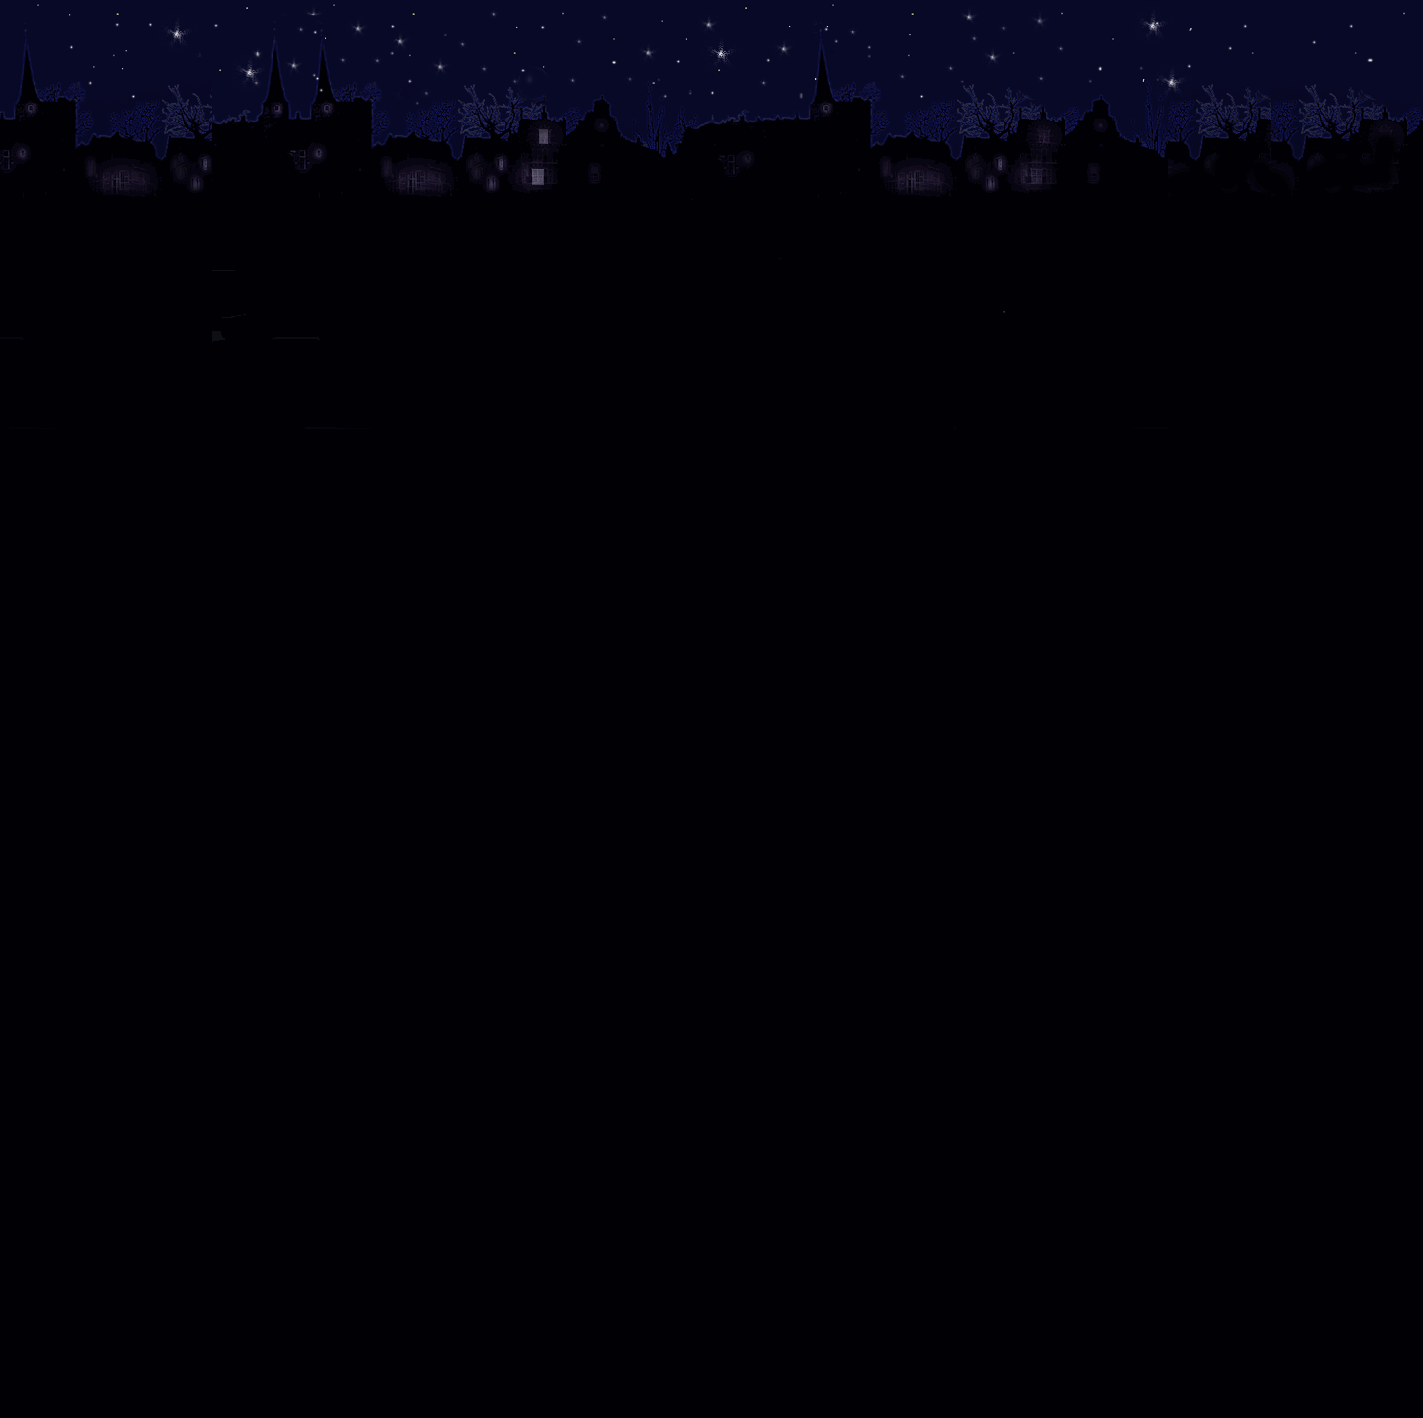 Donkere achtergrond met sterren en een volle maan